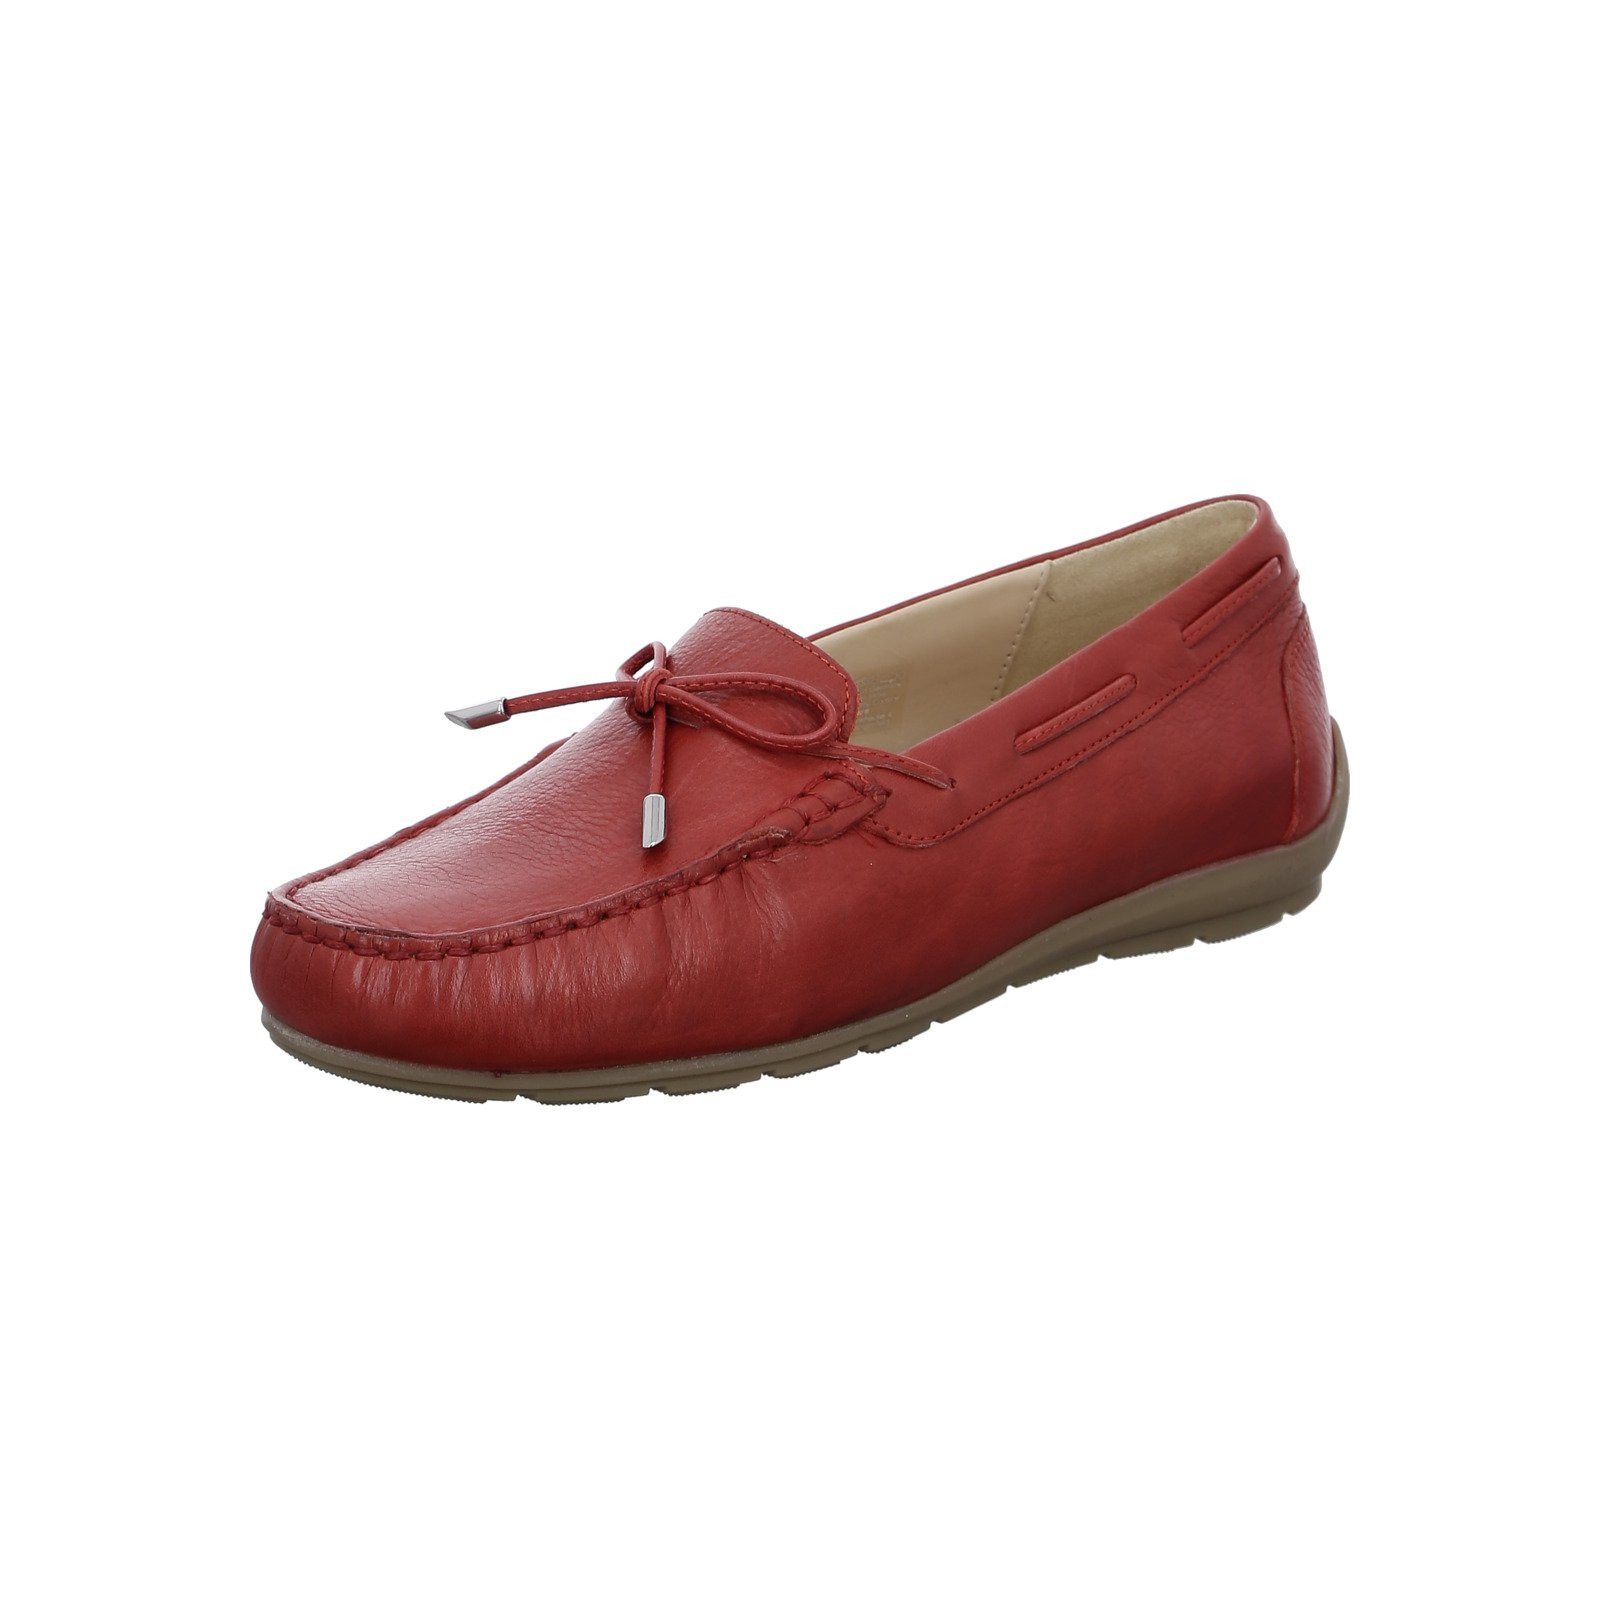 Ara Alabama - Damen Schuhe Slipper Glattleder rot